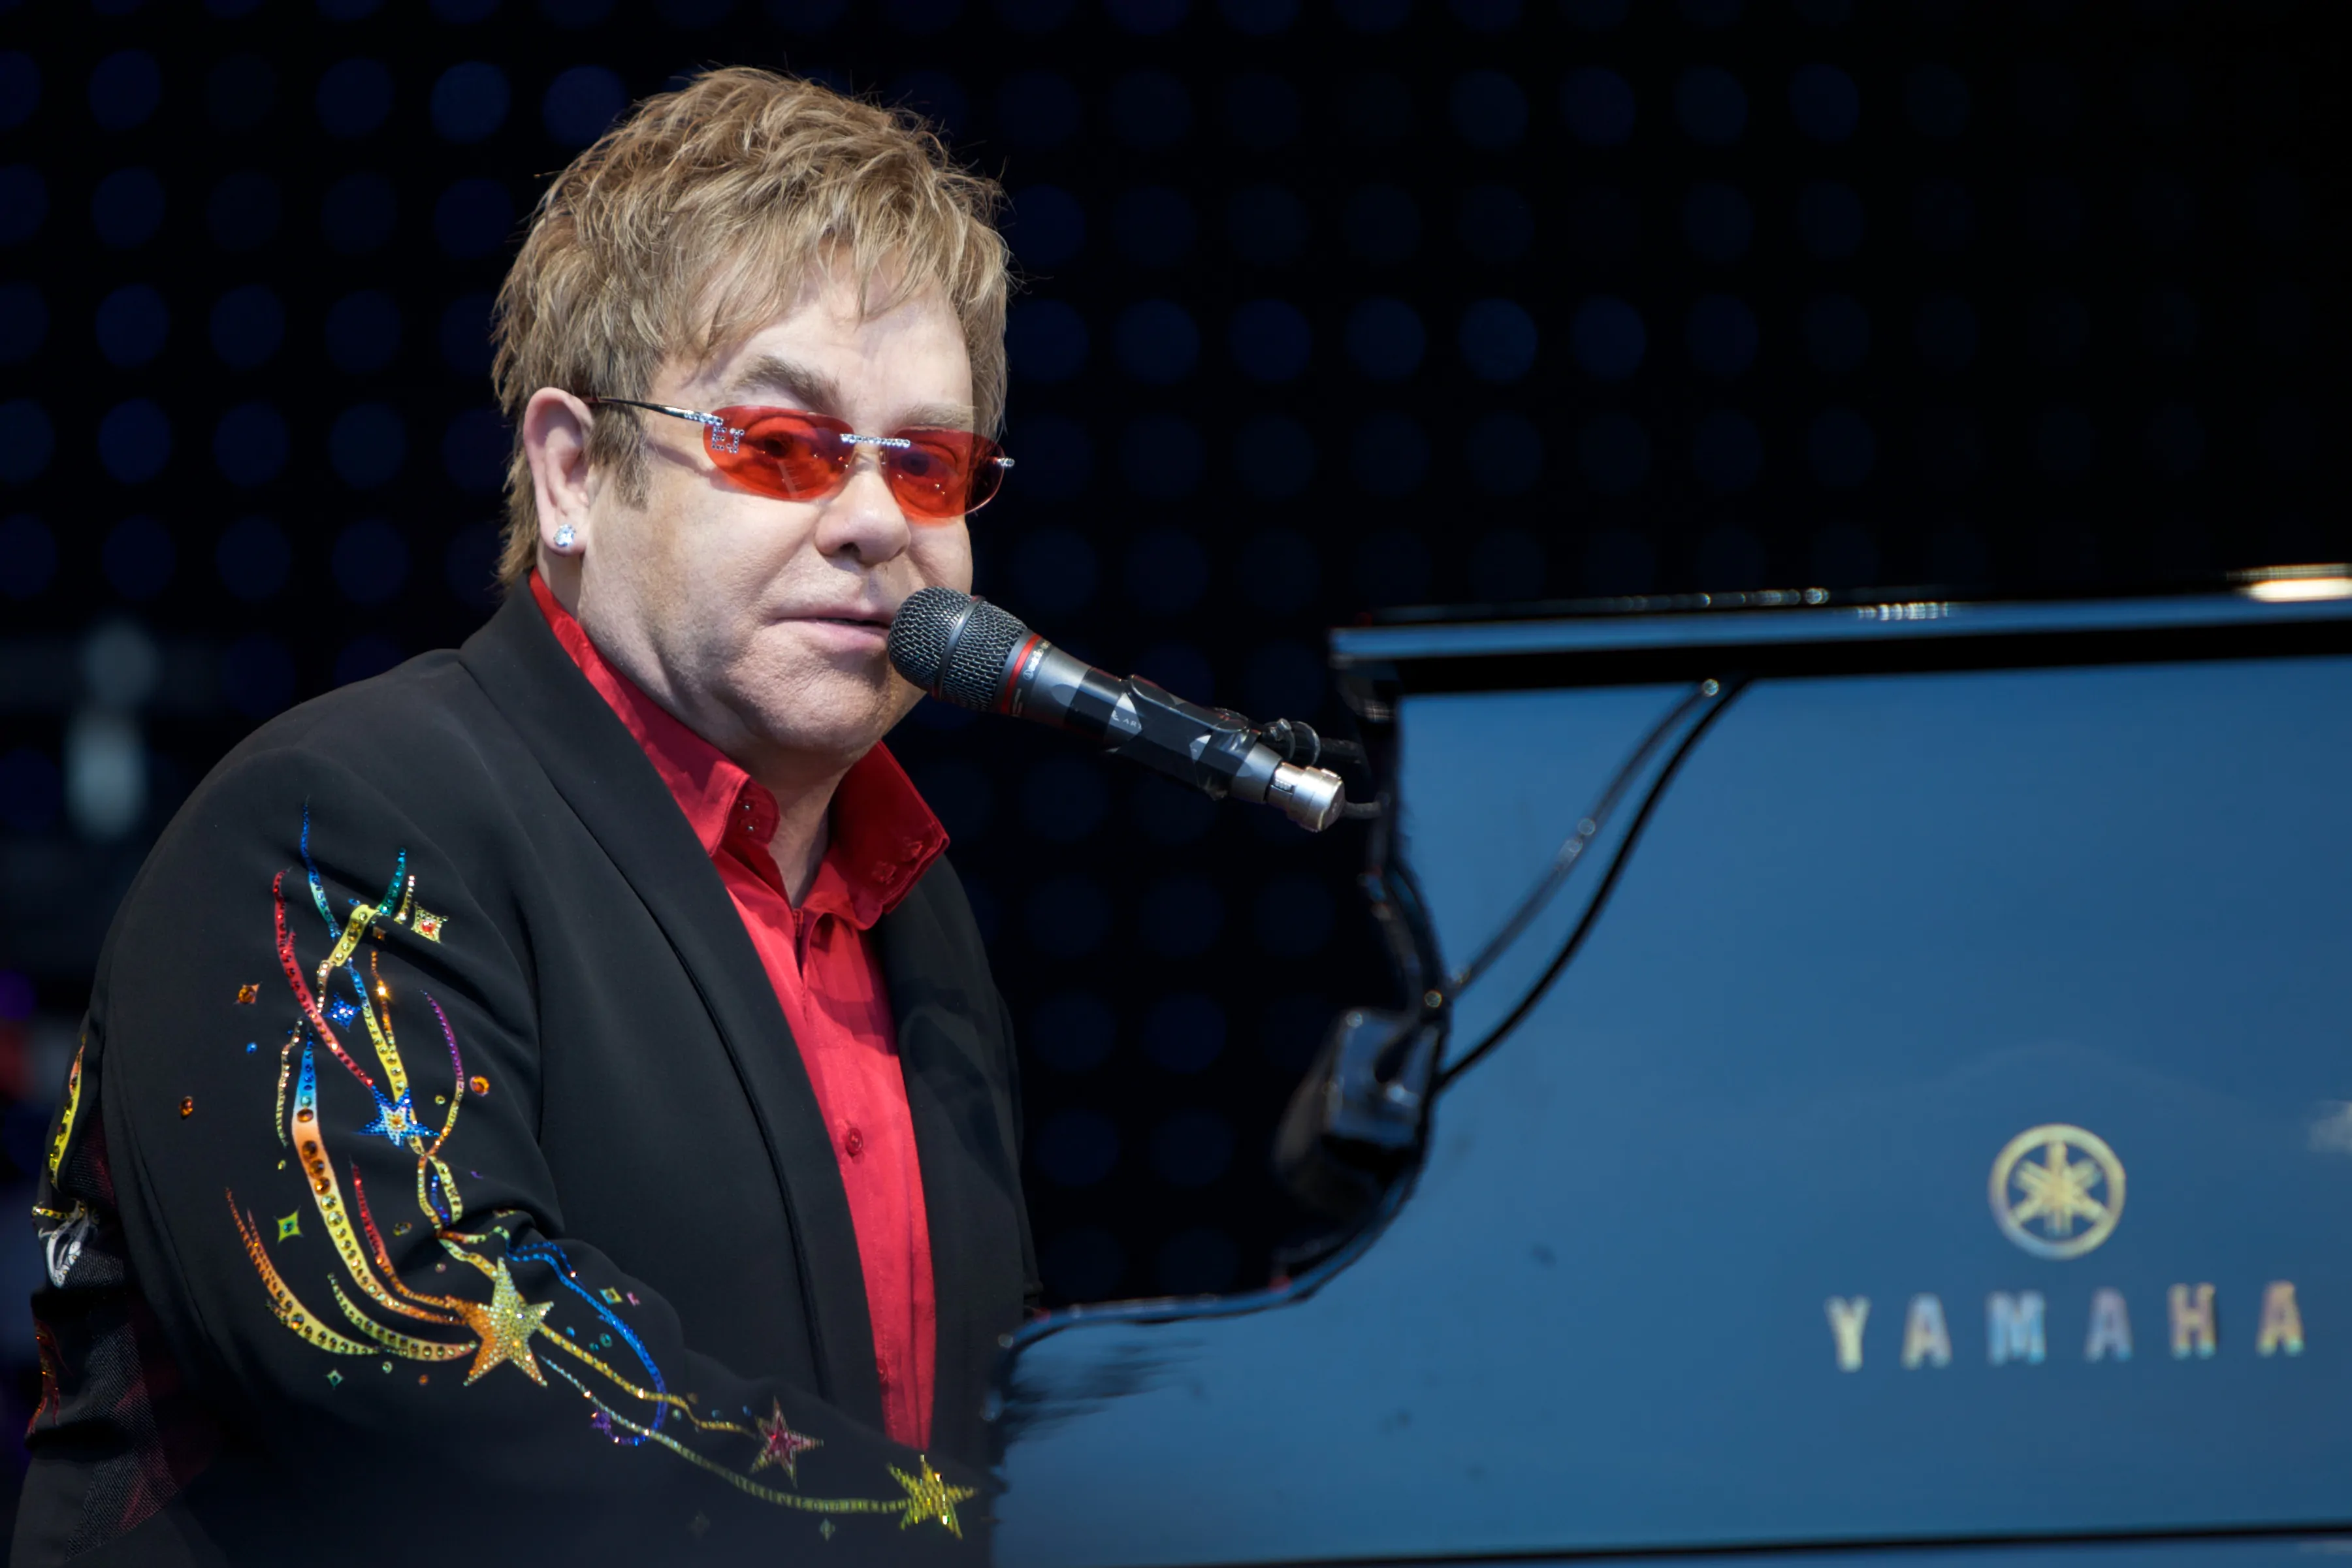 Elton John in Norway 11